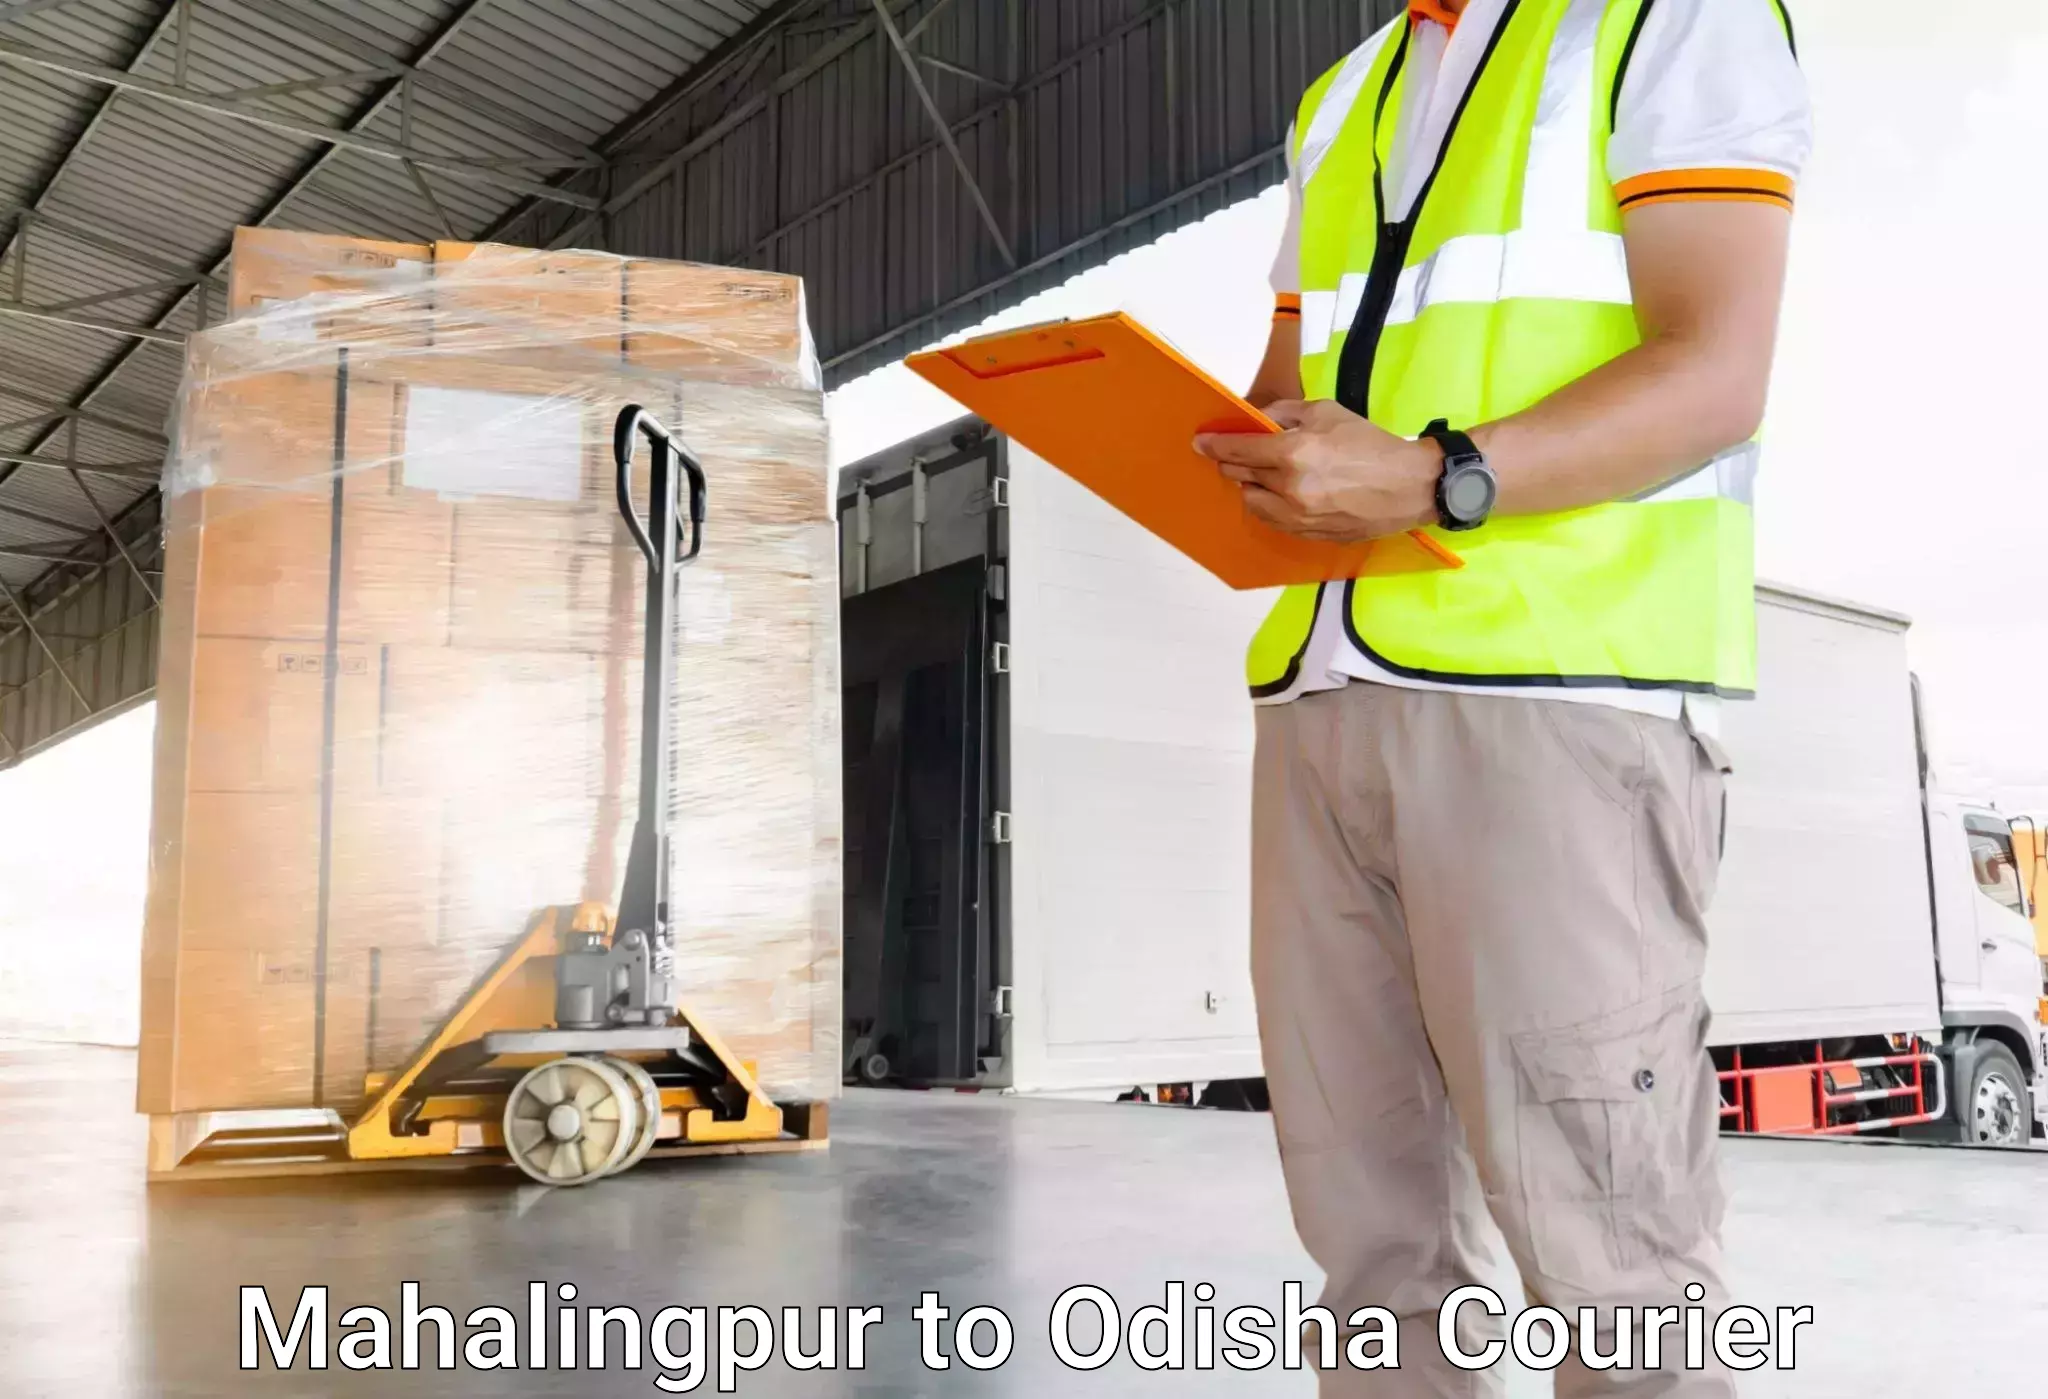 Express luggage delivery Mahalingpur to Sambalpur